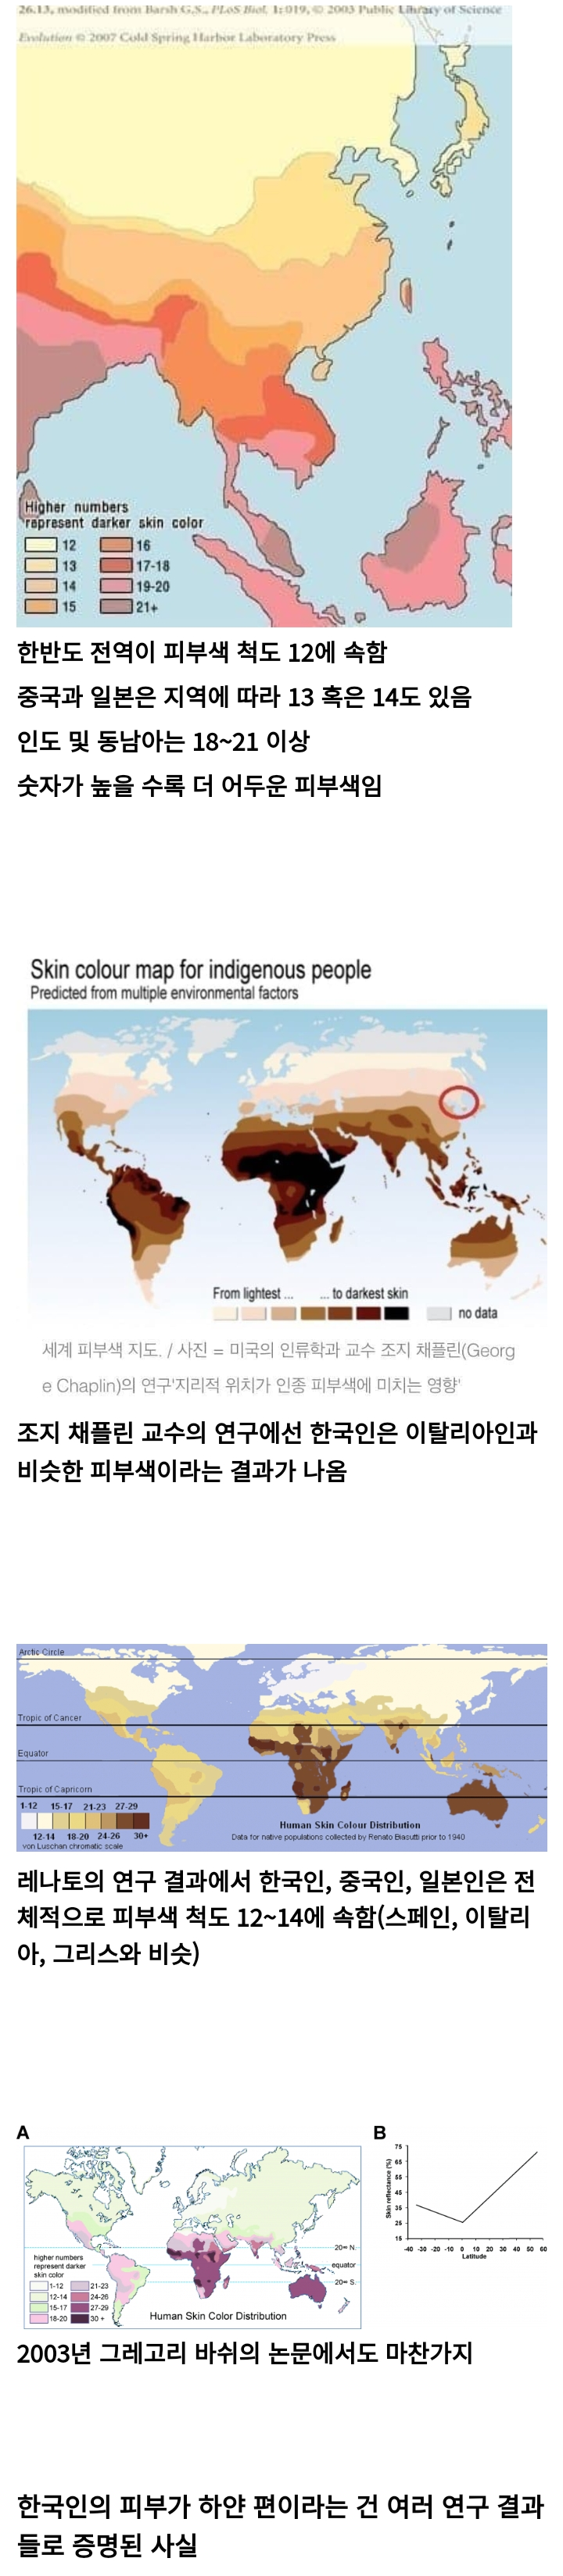 팩트팩트 아시아에서 가장 하얗다는 한국인 피부색.jpg